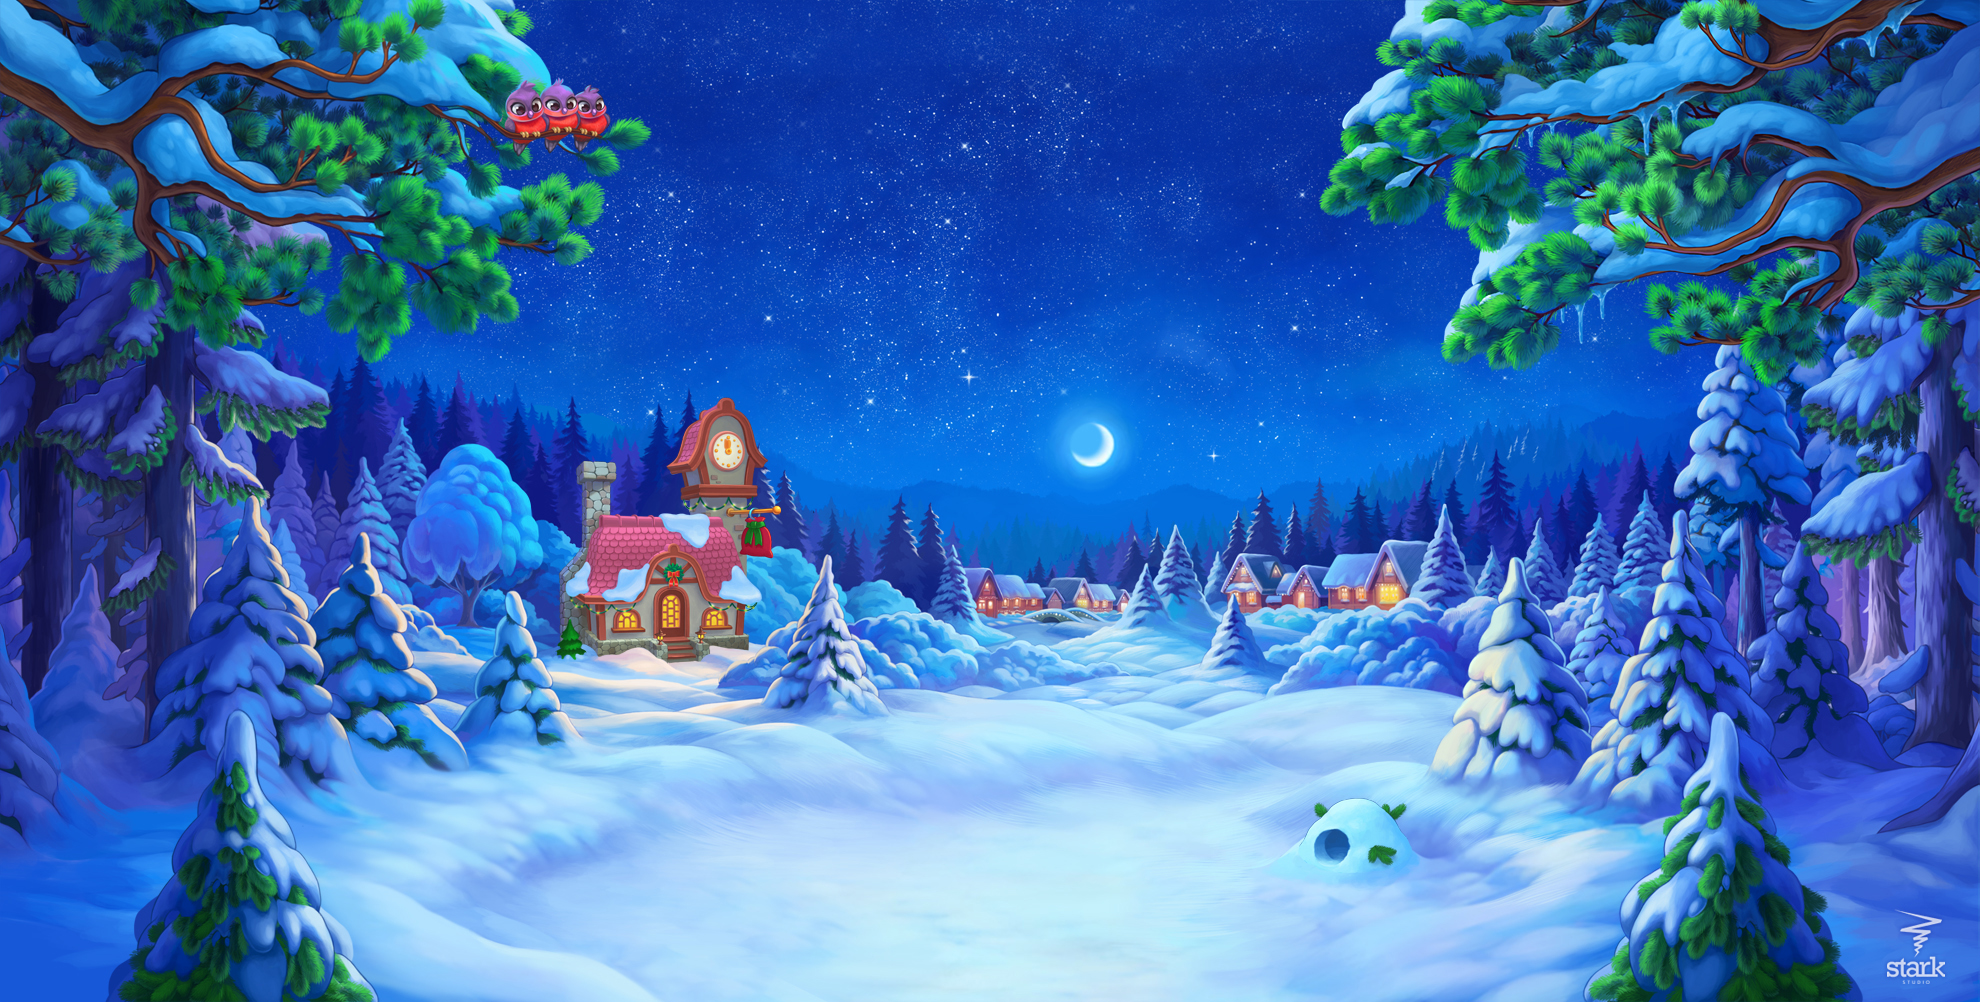 Скачать обои бесплатно Зима, Ночь, Луна, Снег, Деревня, Художественные картинка на рабочий стол ПК